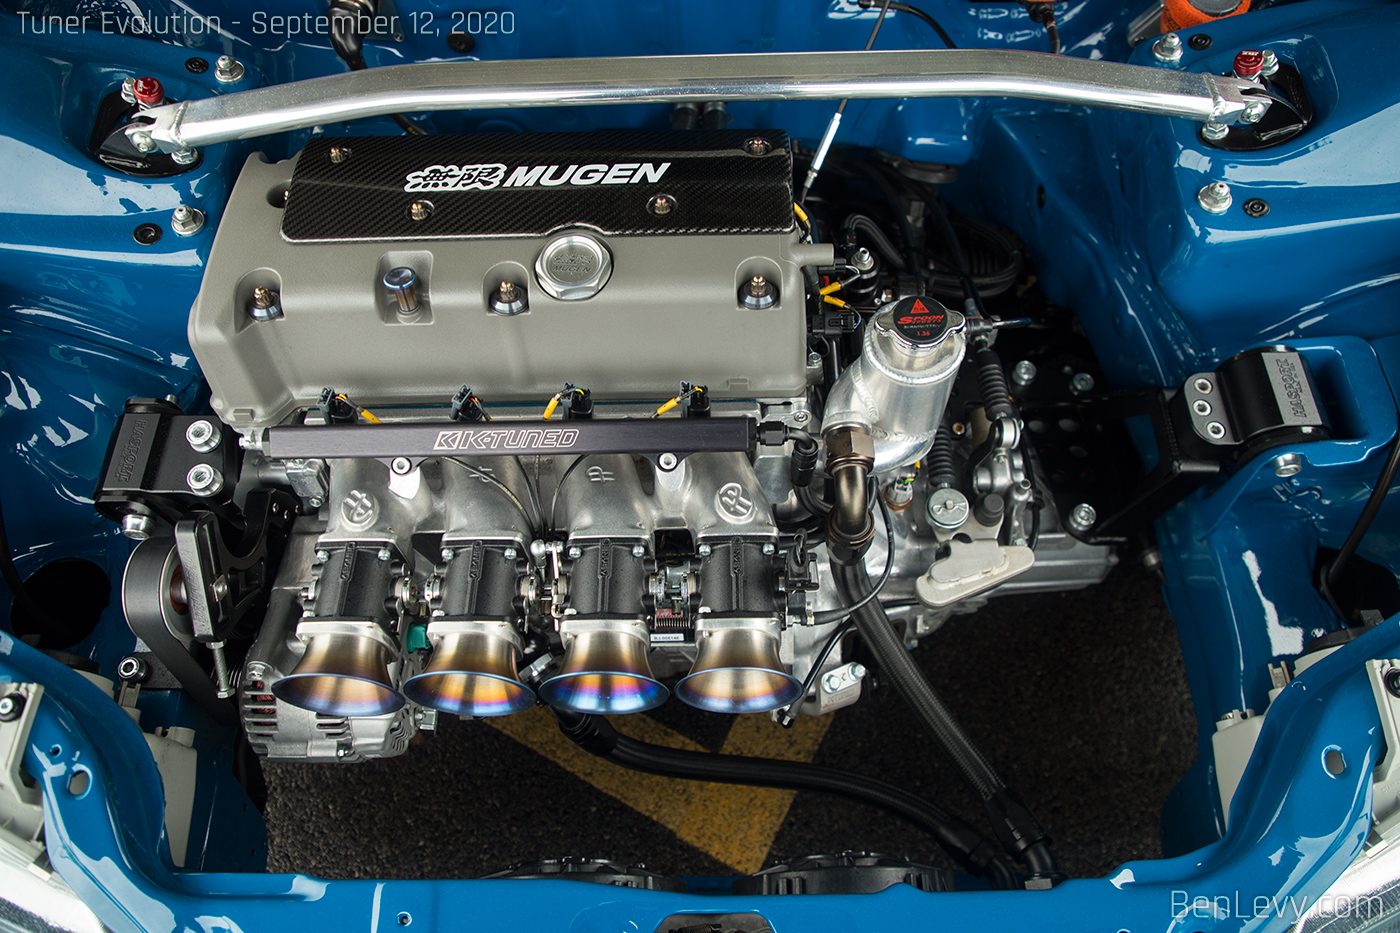 K-Series engine in EG Honda Civic